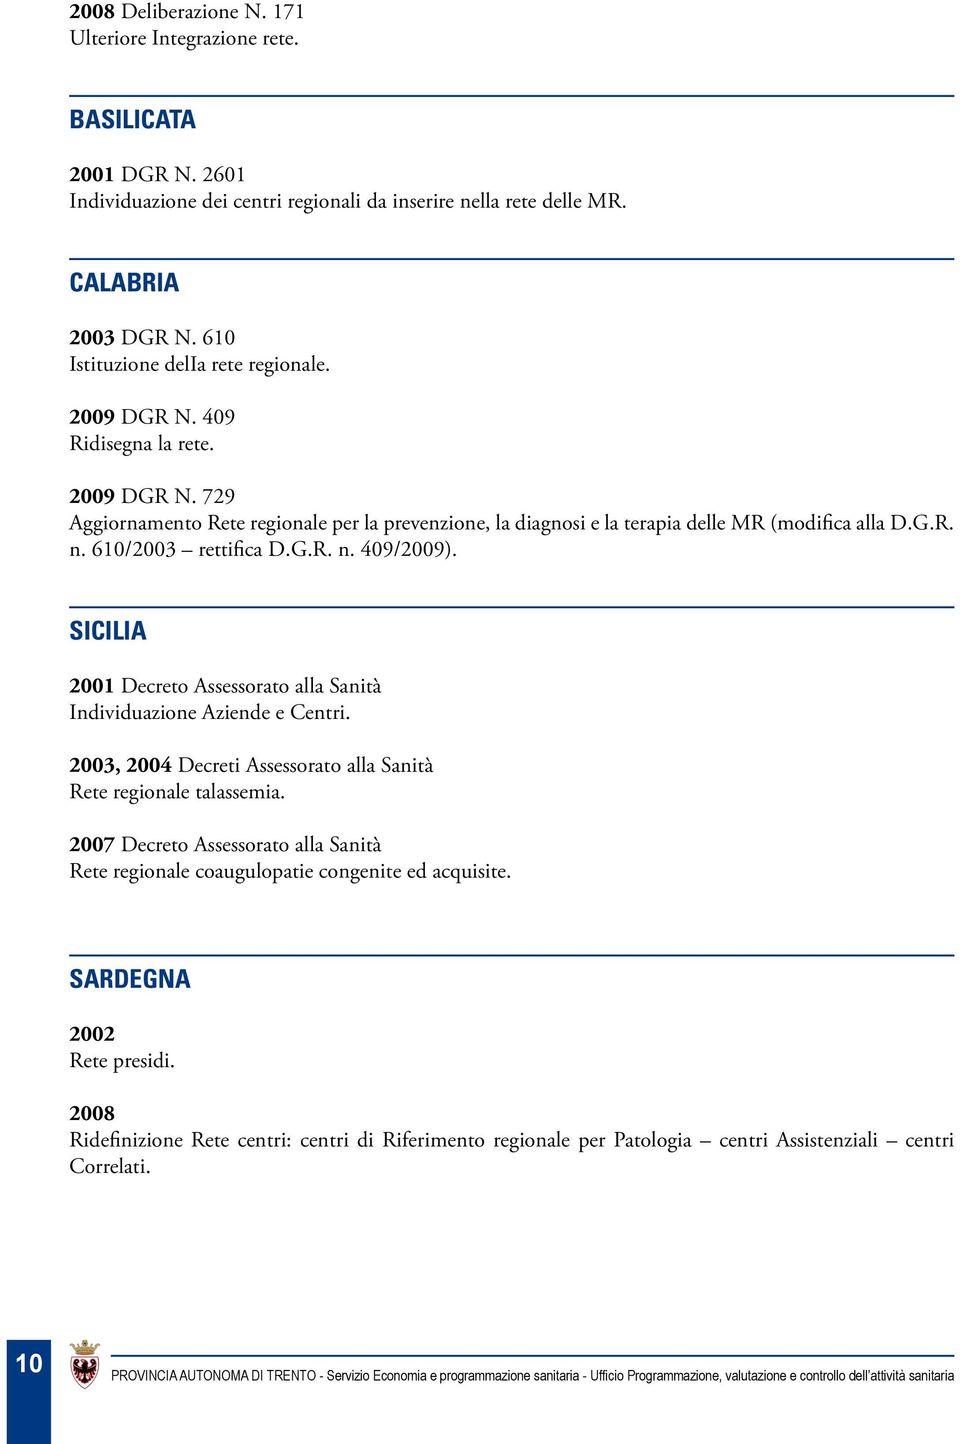 610/2003 rettifica D.G.R. n. 409/2009). SICILIA 2001 Decreto Assessorato alla Sanità Individuazione Aziende e Centri. 2003, 2004 Decreti Assessorato alla Sanità Rete regionale talassemia.